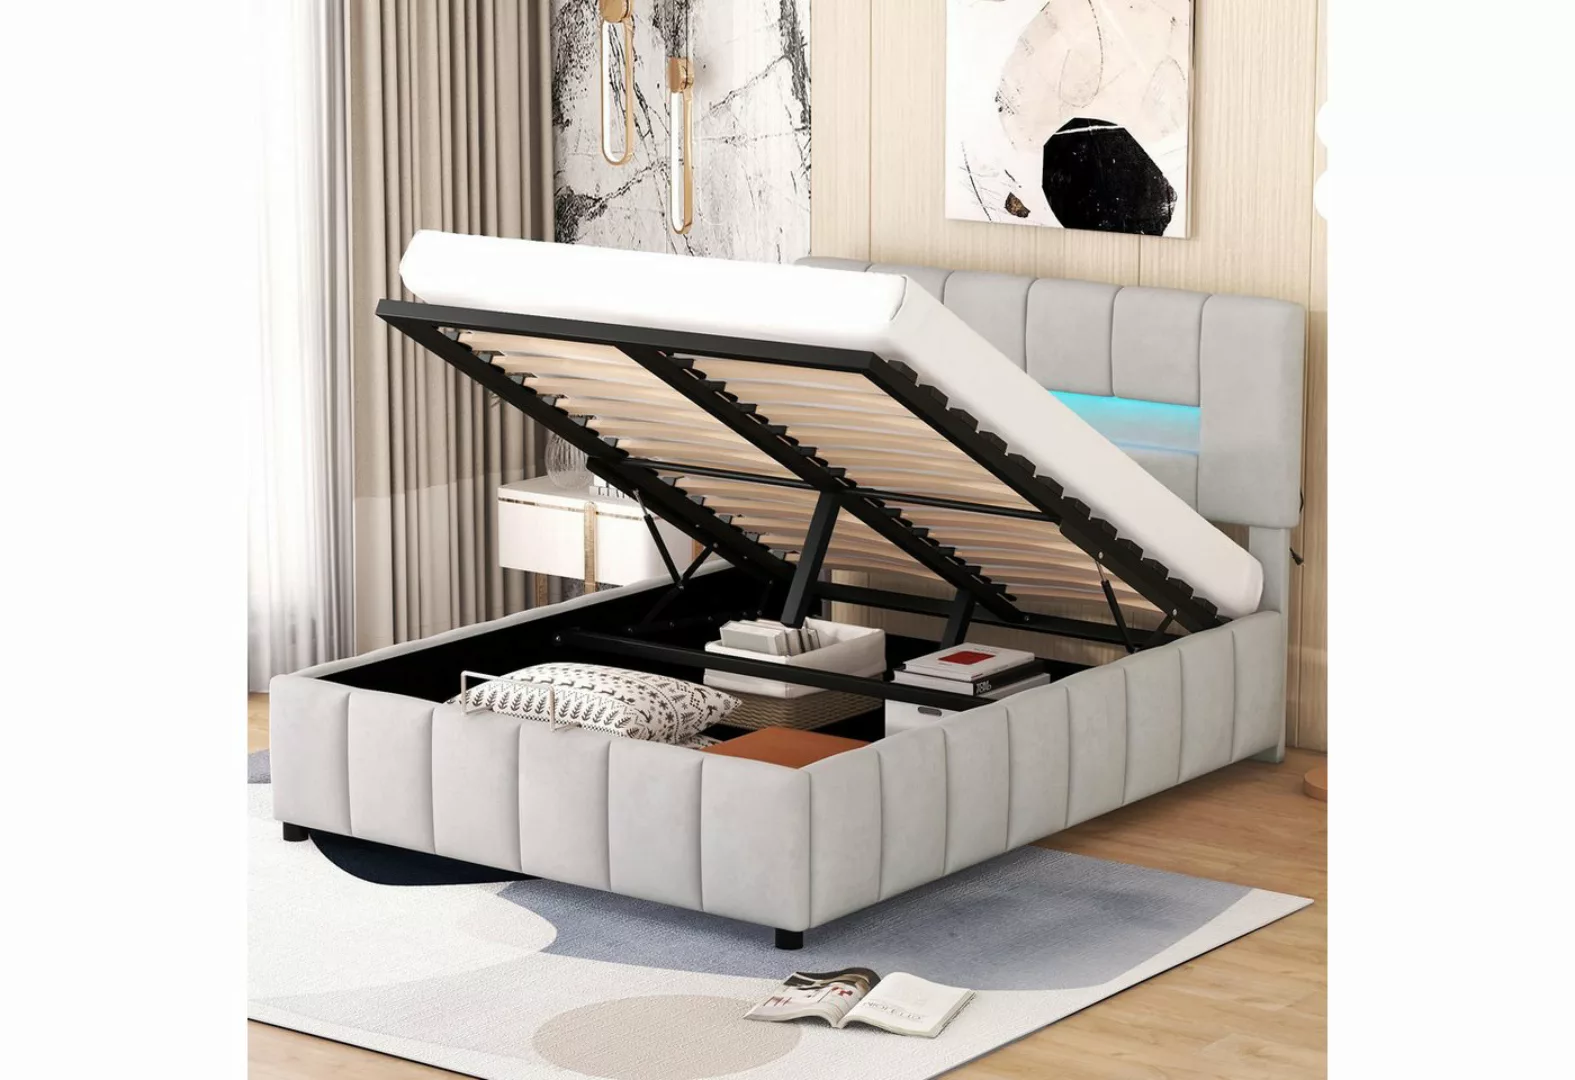 TavilaEcon Polsterbett Doppelbett Familienbett Plattformbett mit LED-Beleuc günstig online kaufen